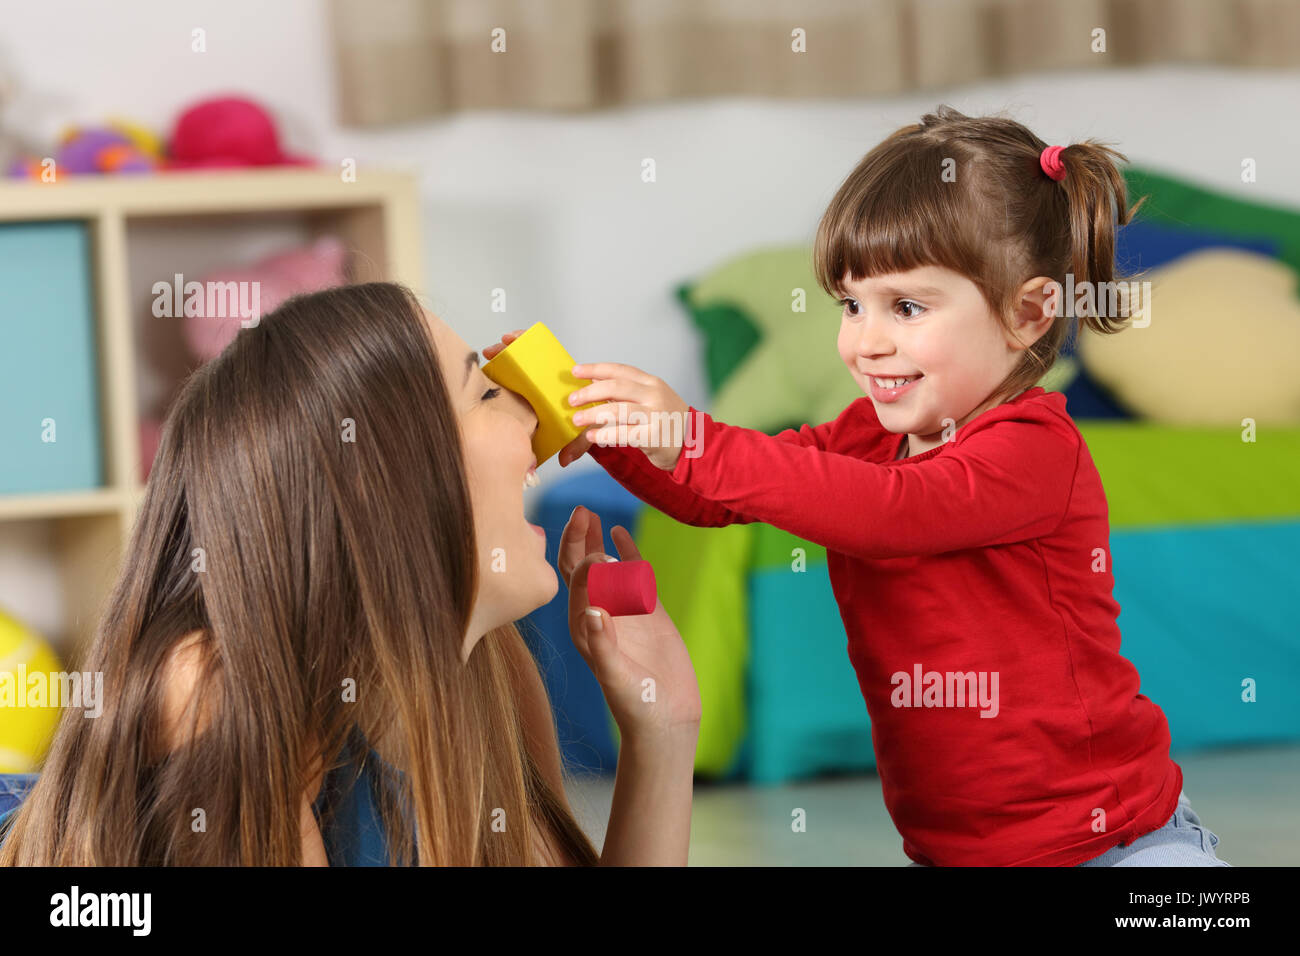 Felice figlia gioca con sua madre sul pavimento di una stanza in casa Foto Stock